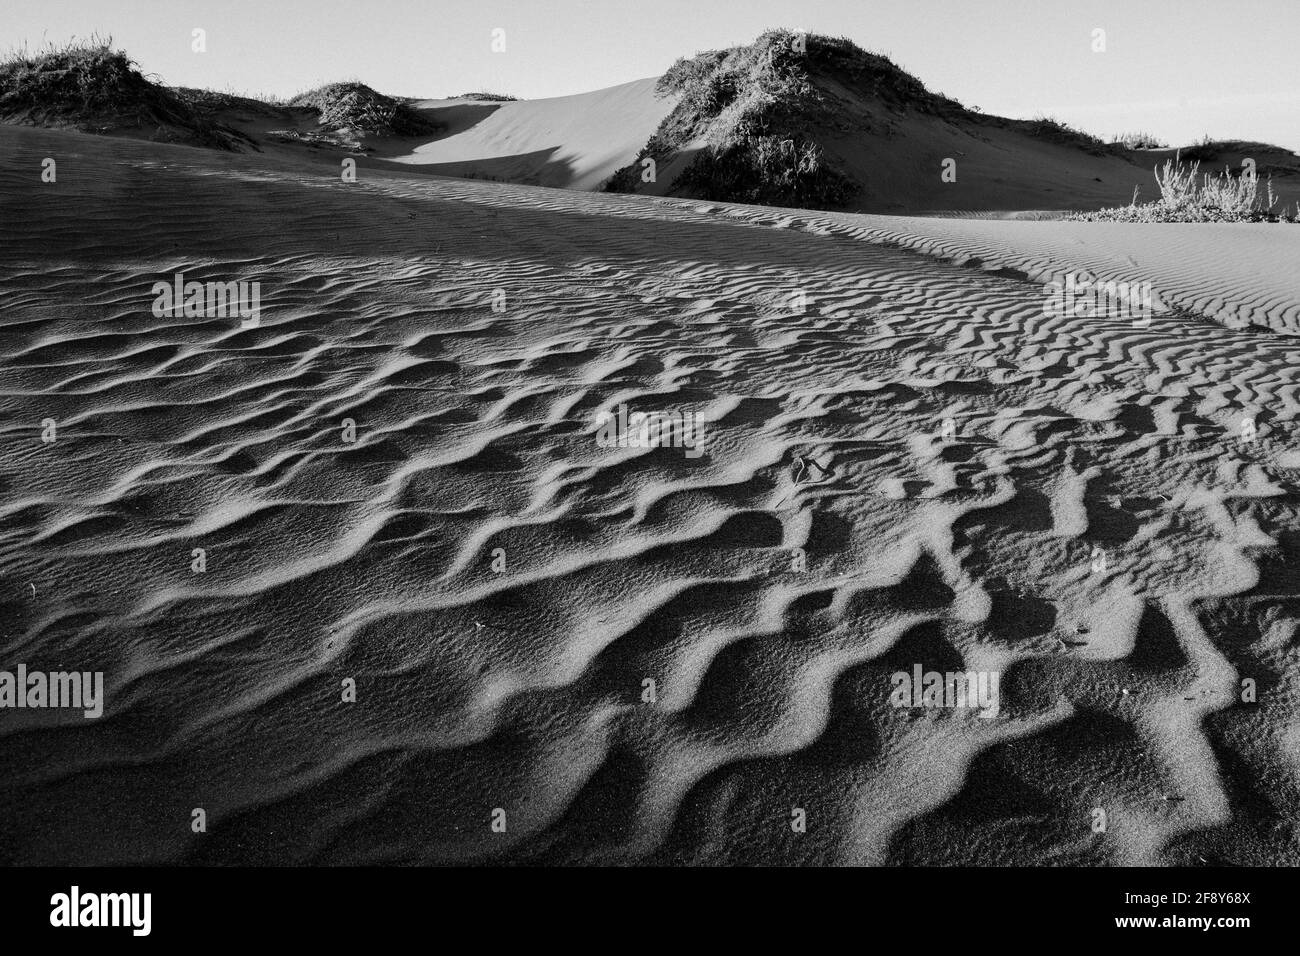 Plage de sable, fort Bragg, Californie, États-Unis Banque D'Images